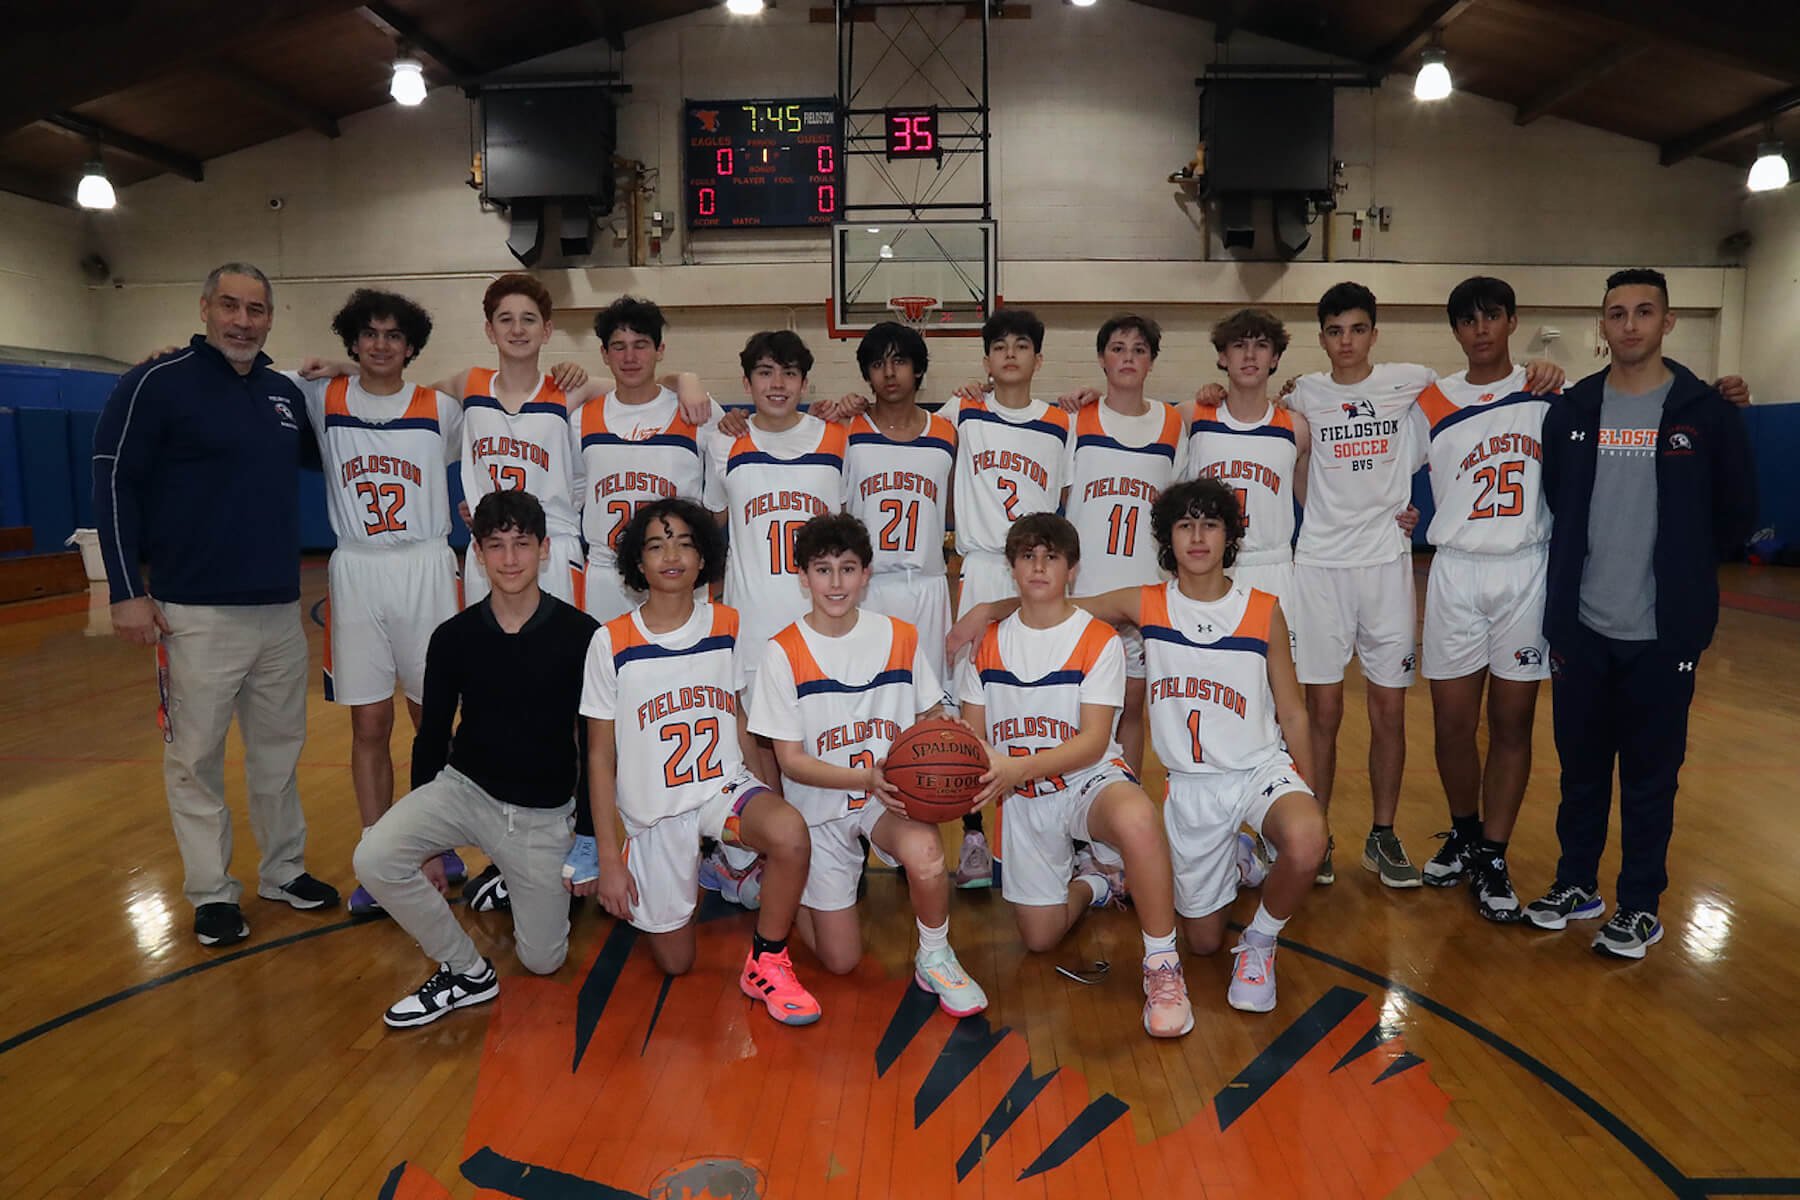 Fieldston Upper JV boys basketball team poses for group photo.